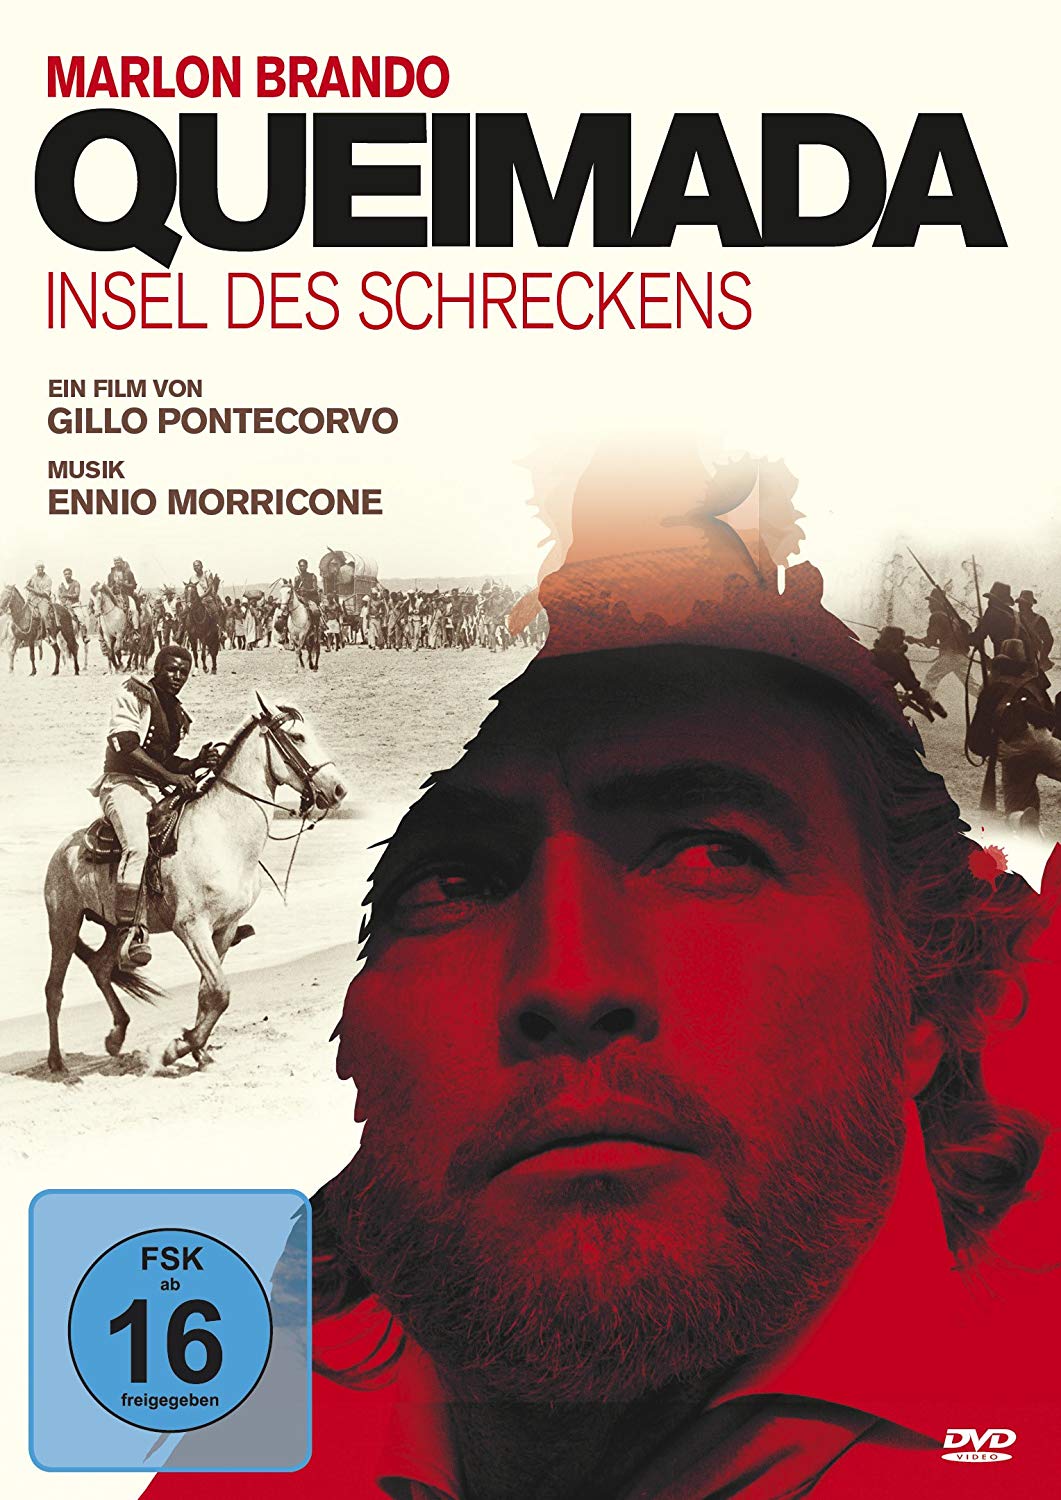 Quiemada – Insel des Schreckens (1969) – Ab sofort auf Blu-ray und DVD im  Handel erhältlich